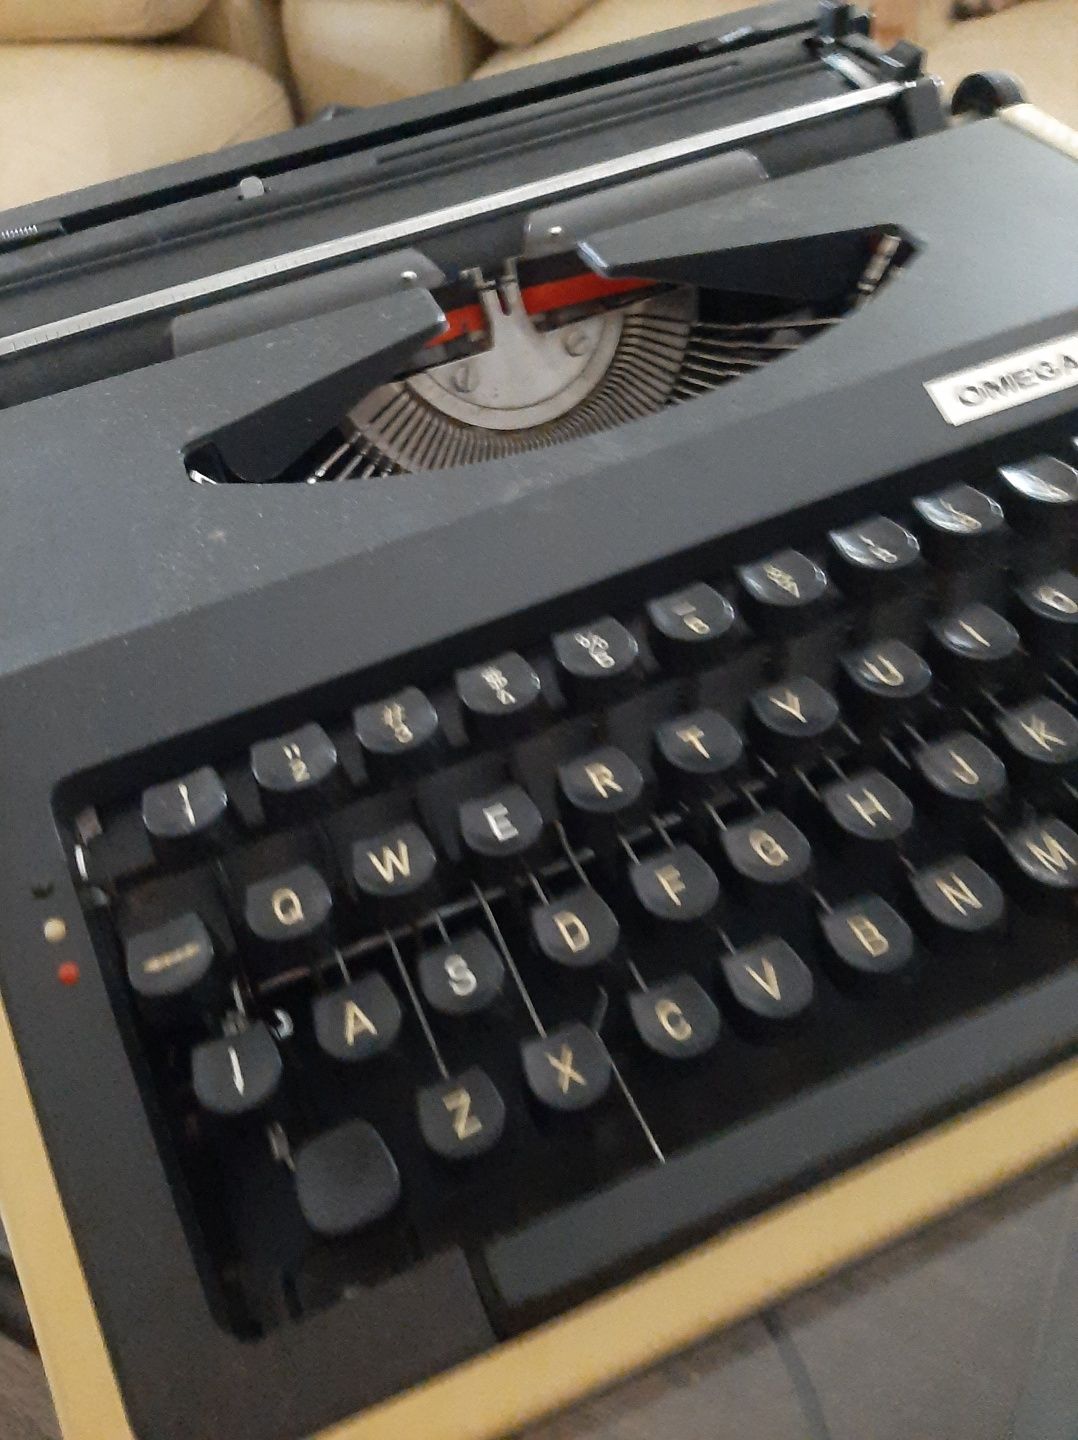 Maszyna do pisania, walizkowa, w pełni sprawna. Polecam inne rzeczy a